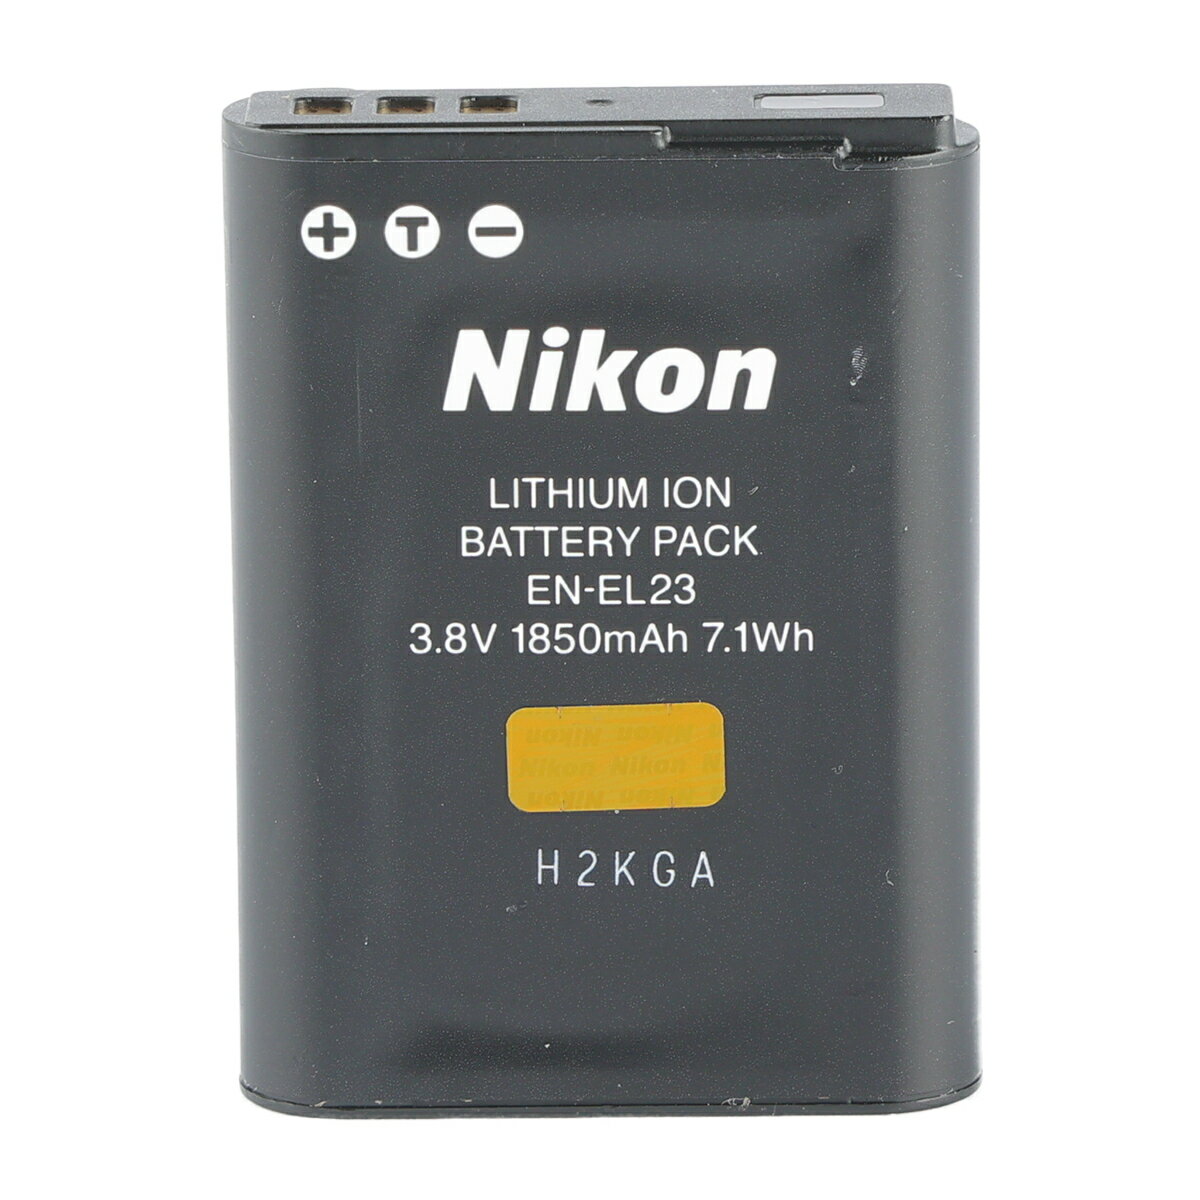 【あす楽】【中古】《良品》Nikon EN-EL23 コンパクトデジタルカメラ バッテリーCOOLPIX P900 COOLPIX B700 COOLPIX P610 COOLPIX P600